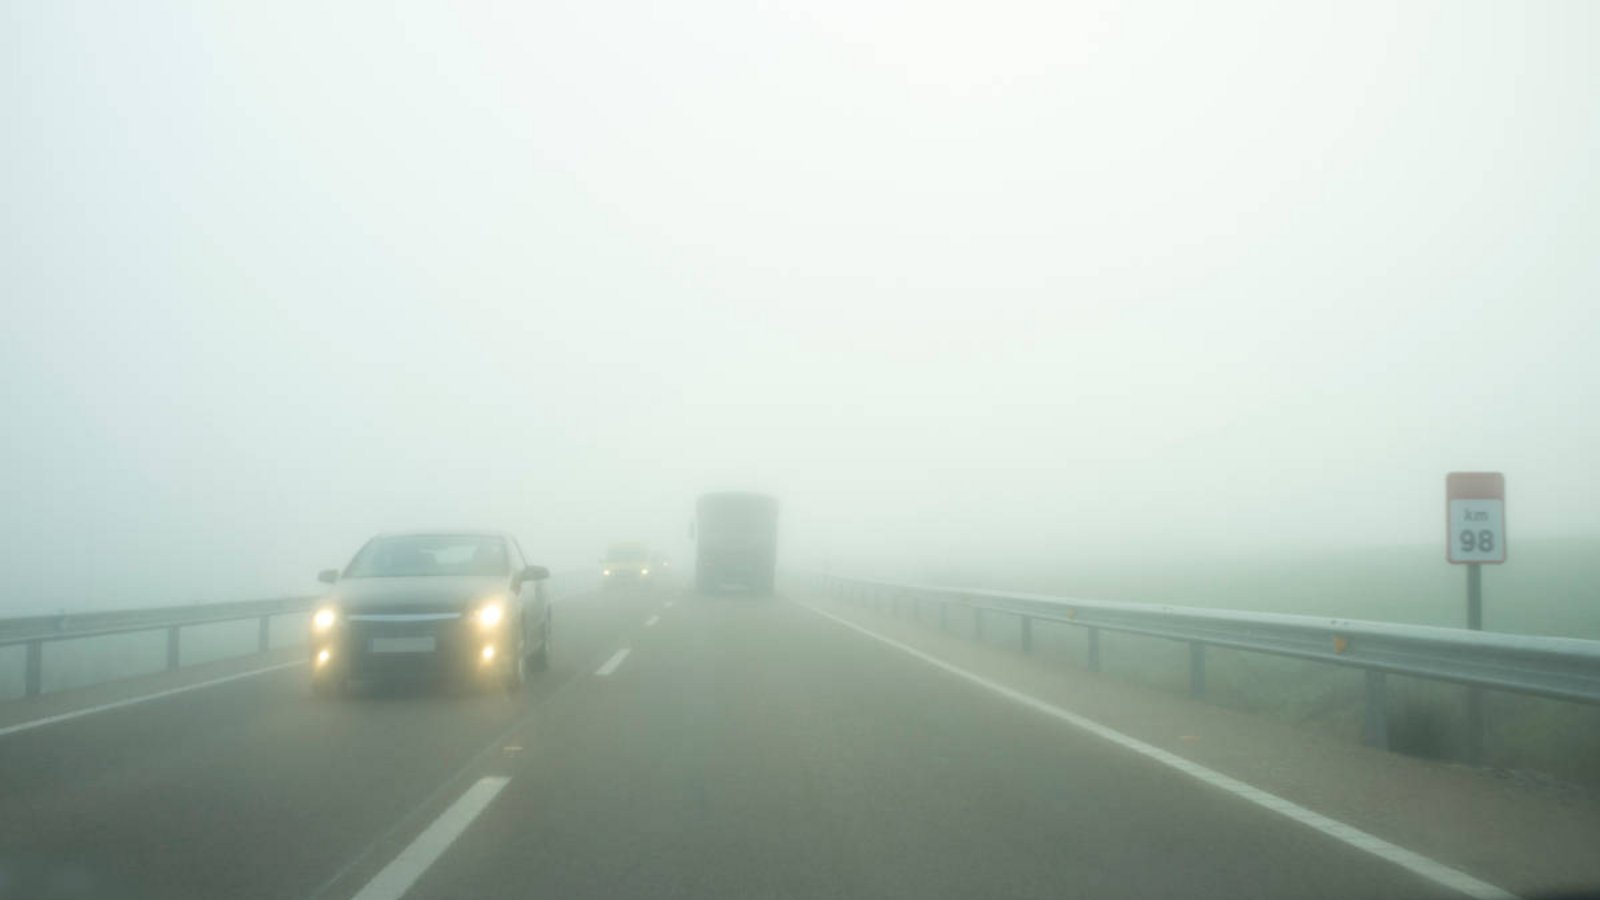 Erfahren Sie, ob Nebelscheinwerfer im Straßenverkehr Pflicht sind und welches Licht Sie bei Nebel benutzen müssen.Foto: WH_Pics / Shutterstock.com